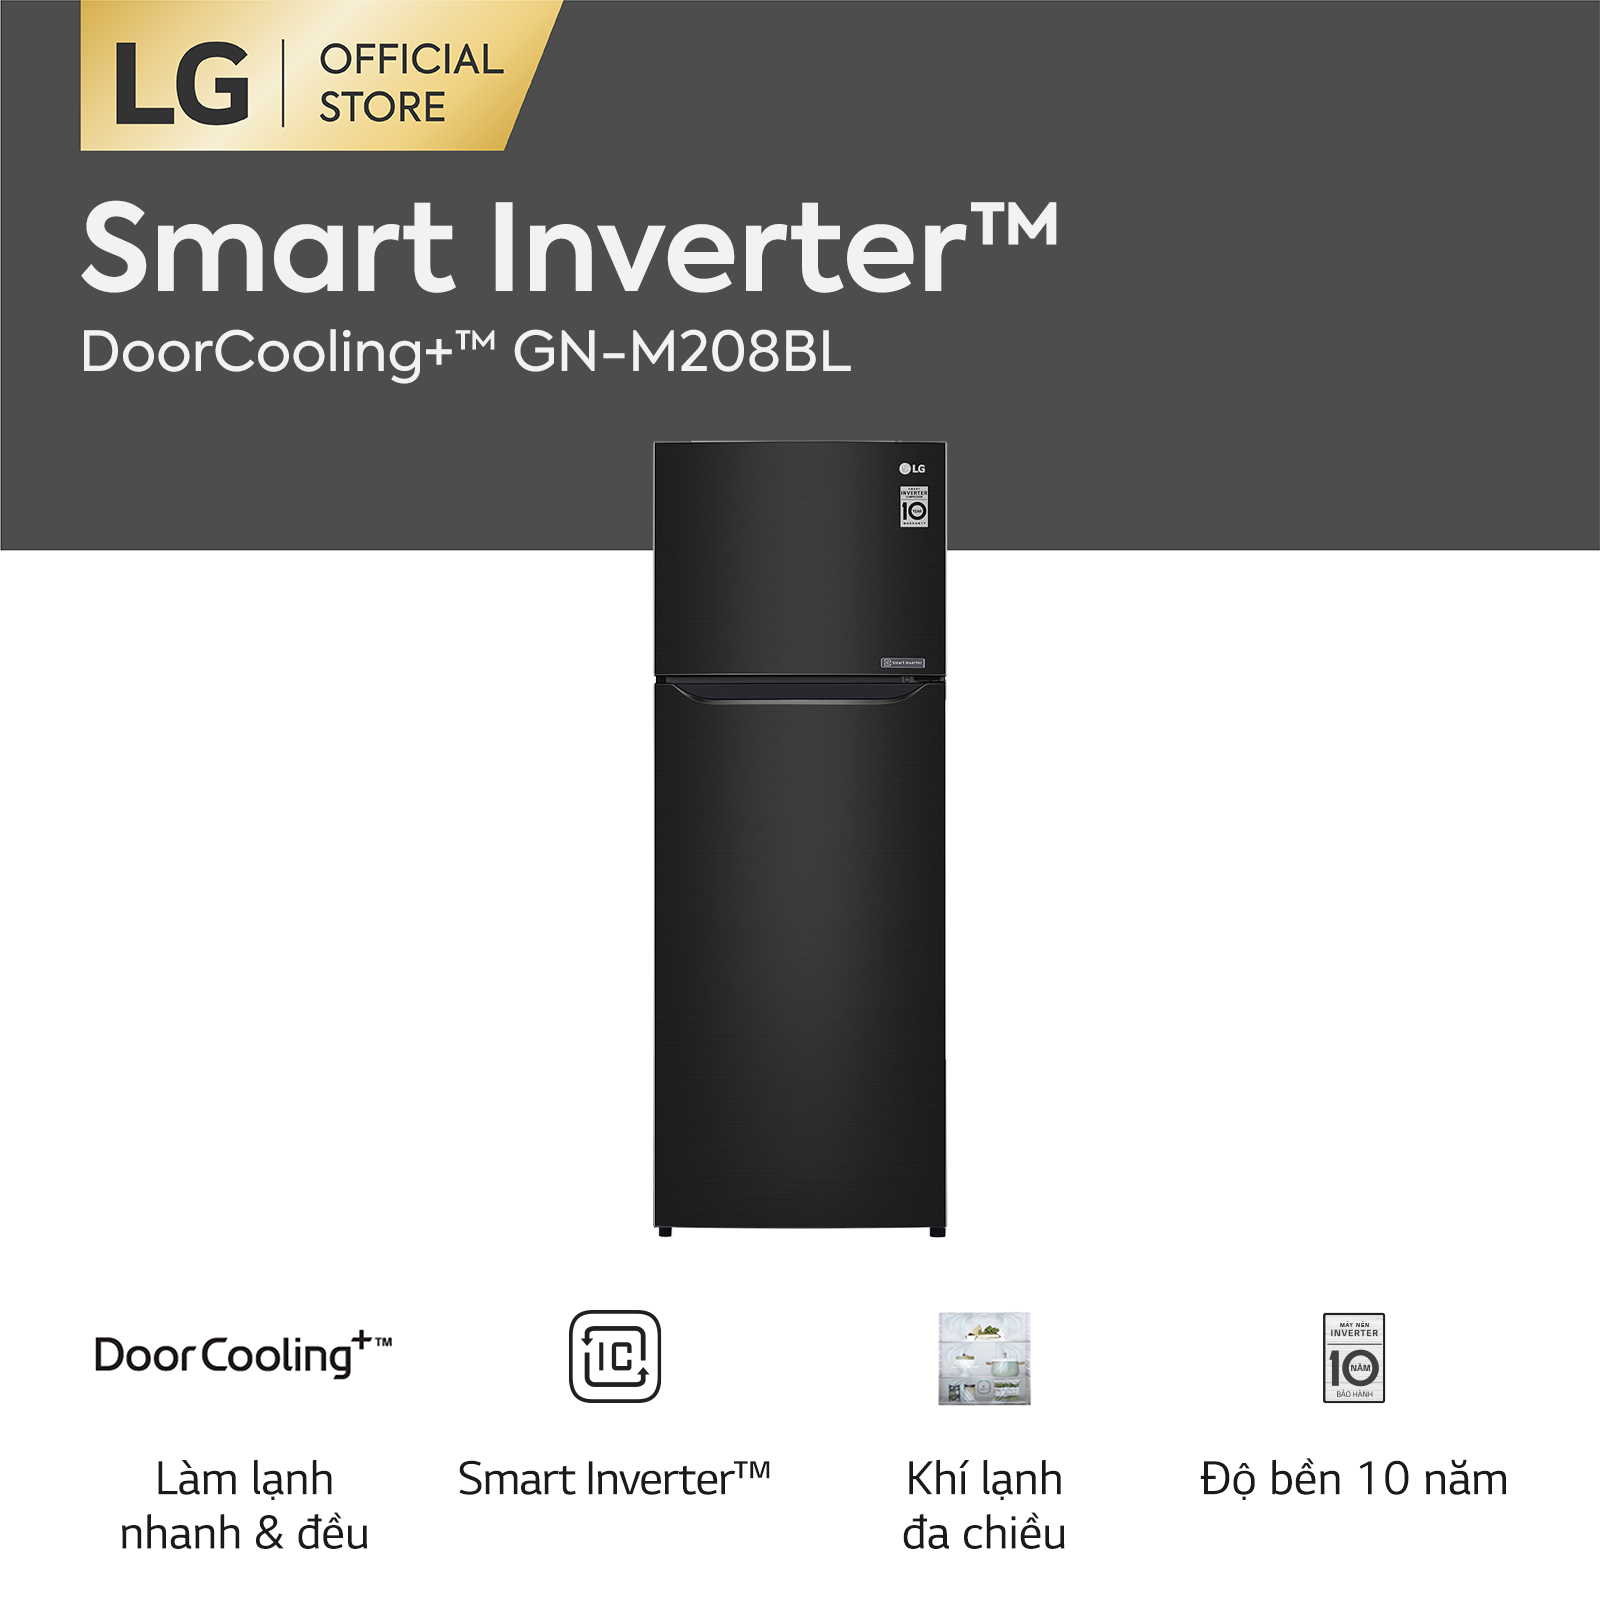 [Trả góp 0%][FREESHIP 500K TOÀN QUỐC] Tủ lạnh LG Smart Inverter ngăn đá trên với DoorCooling+™ GN-M208BL 225L (Đen) 555 x 152 x 585(cm) - Hãng phân phối chính thức